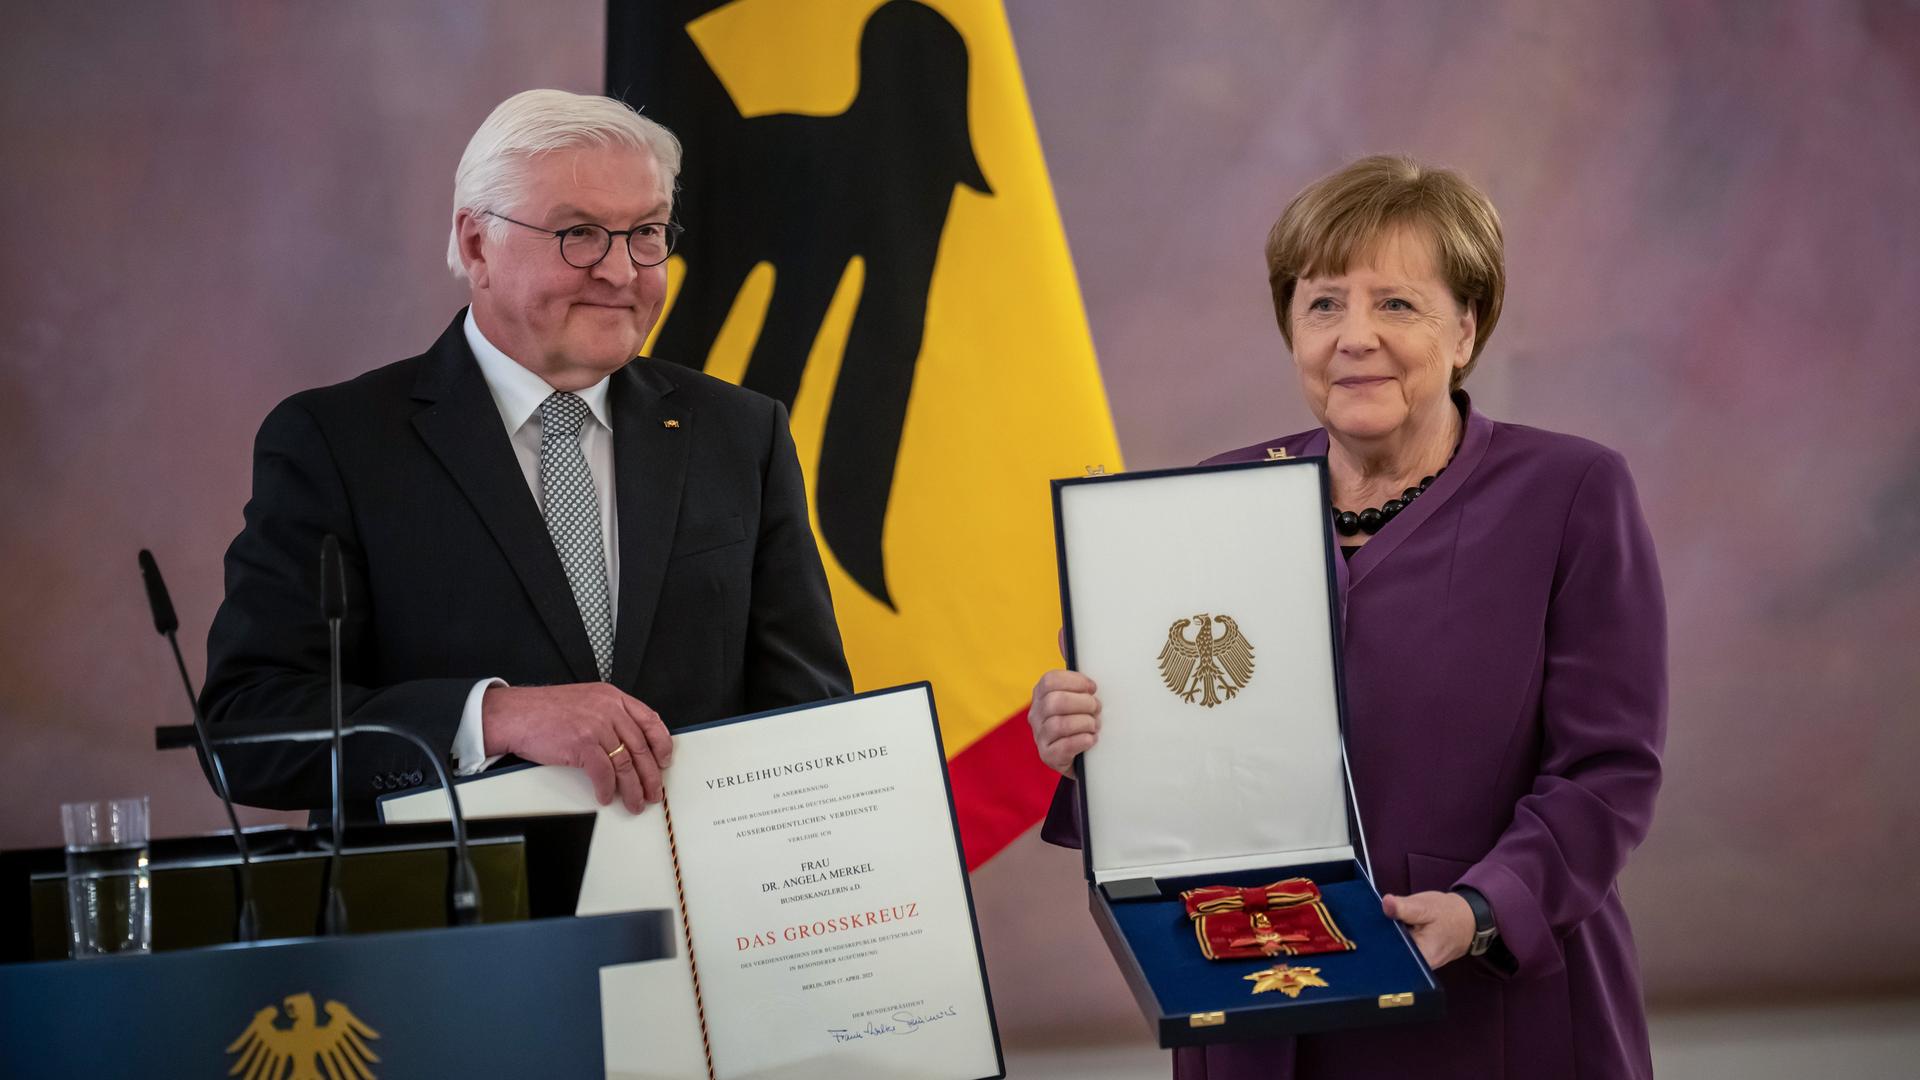 Die ehemalige Bundeskanzlerin Angela Merkel (CDU) steht neben Bundespräsident Frank-Walter Steinmeier und hält das Großkreuz des Verdienstordens der Bundesrepublik Deutschland in besonderer Ausführung mit beiden Händen vor sich.